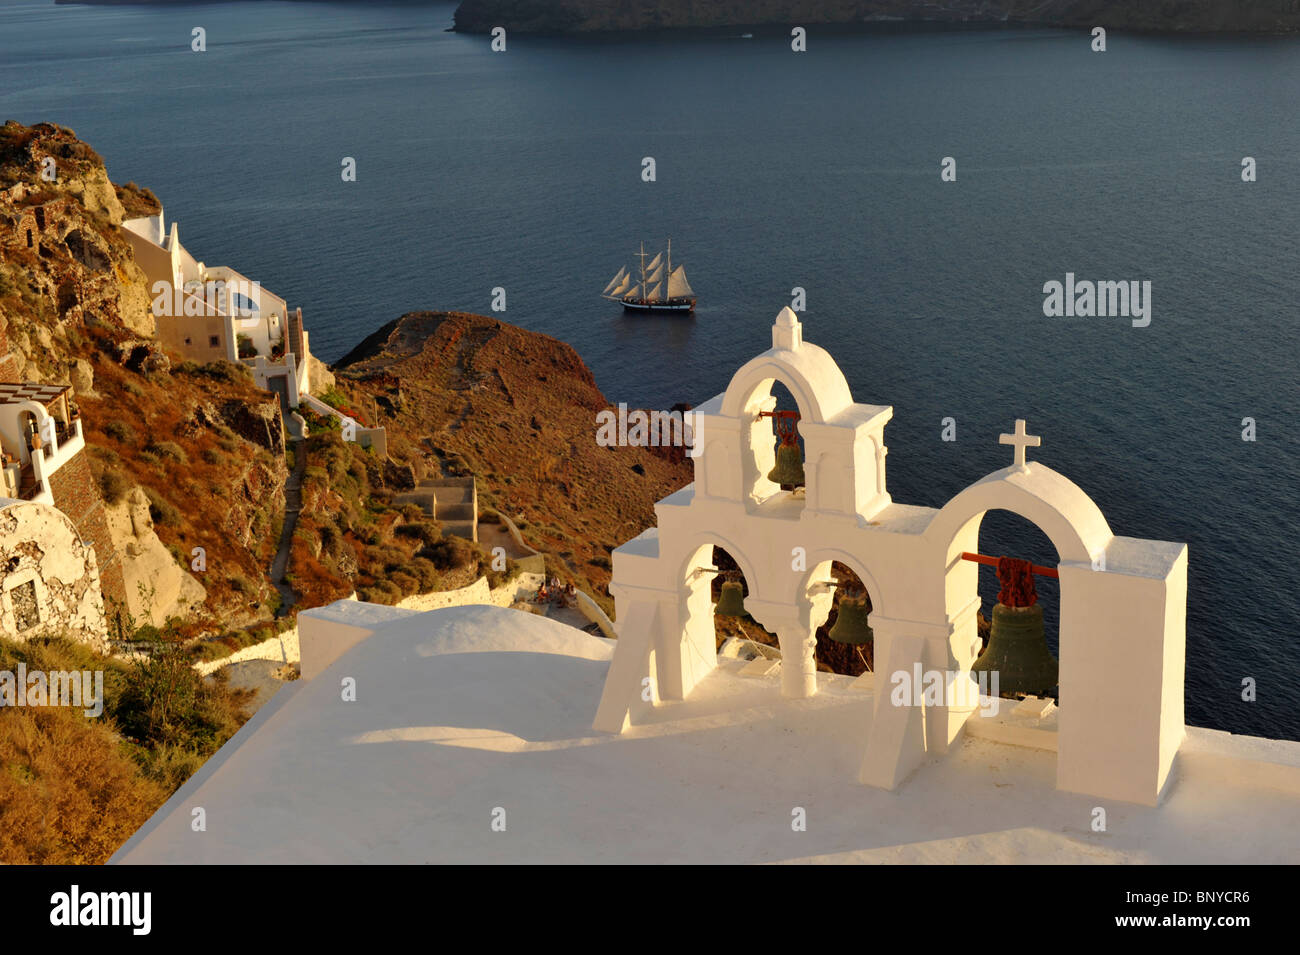 Campanile della chiesa con una nave a vela nella caldera a Oia sull'isola greca di Santorini nelle Cicladi Foto Stock